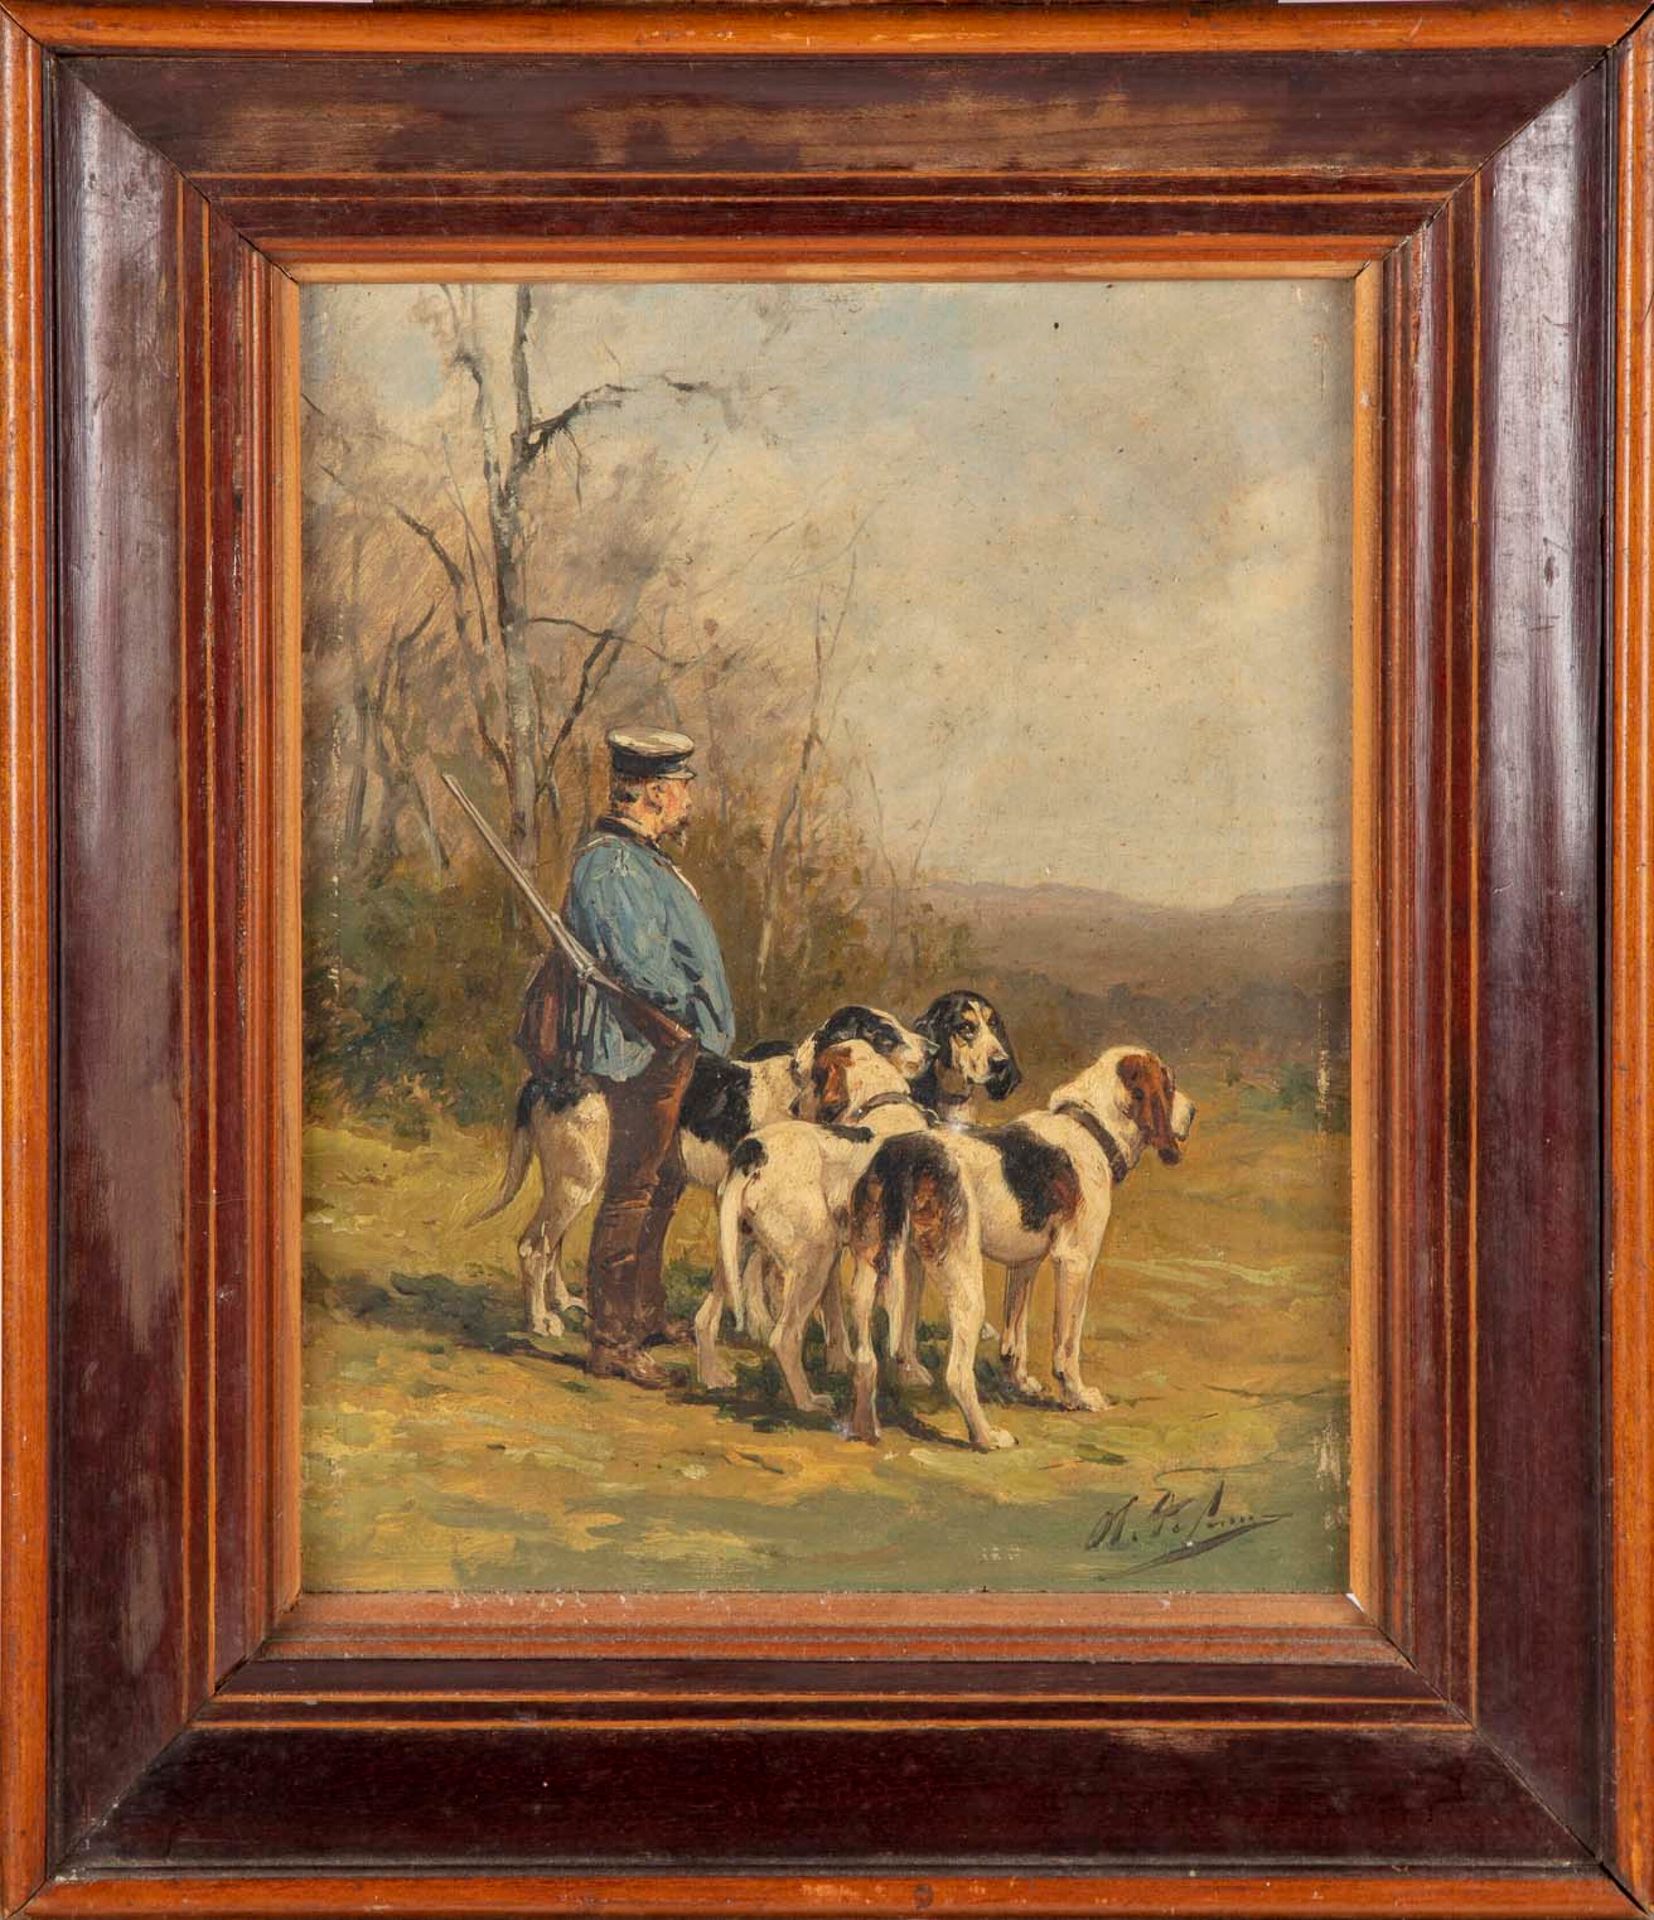 De Penne Olivier Charles de PENNE (1831-1897).

Jäger und seine Hunde

Jagdhunde&hellip;